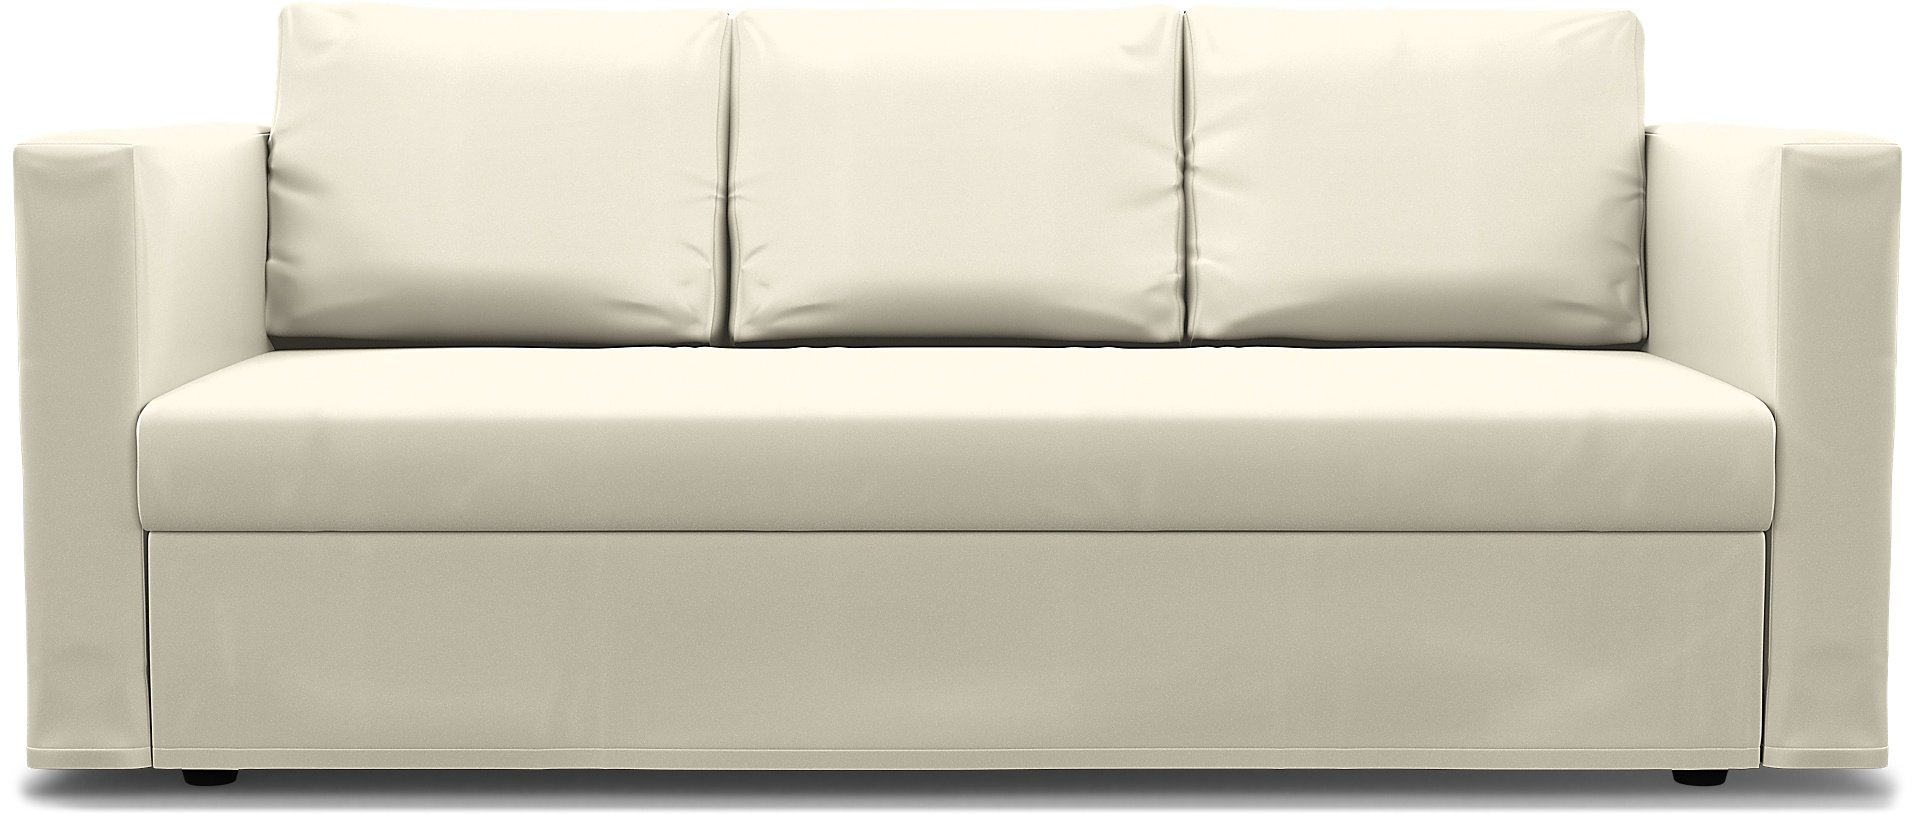 IKEA - Friheten 3 Seater Sofa Bed Cover, Tofu, Cotton - Bemz